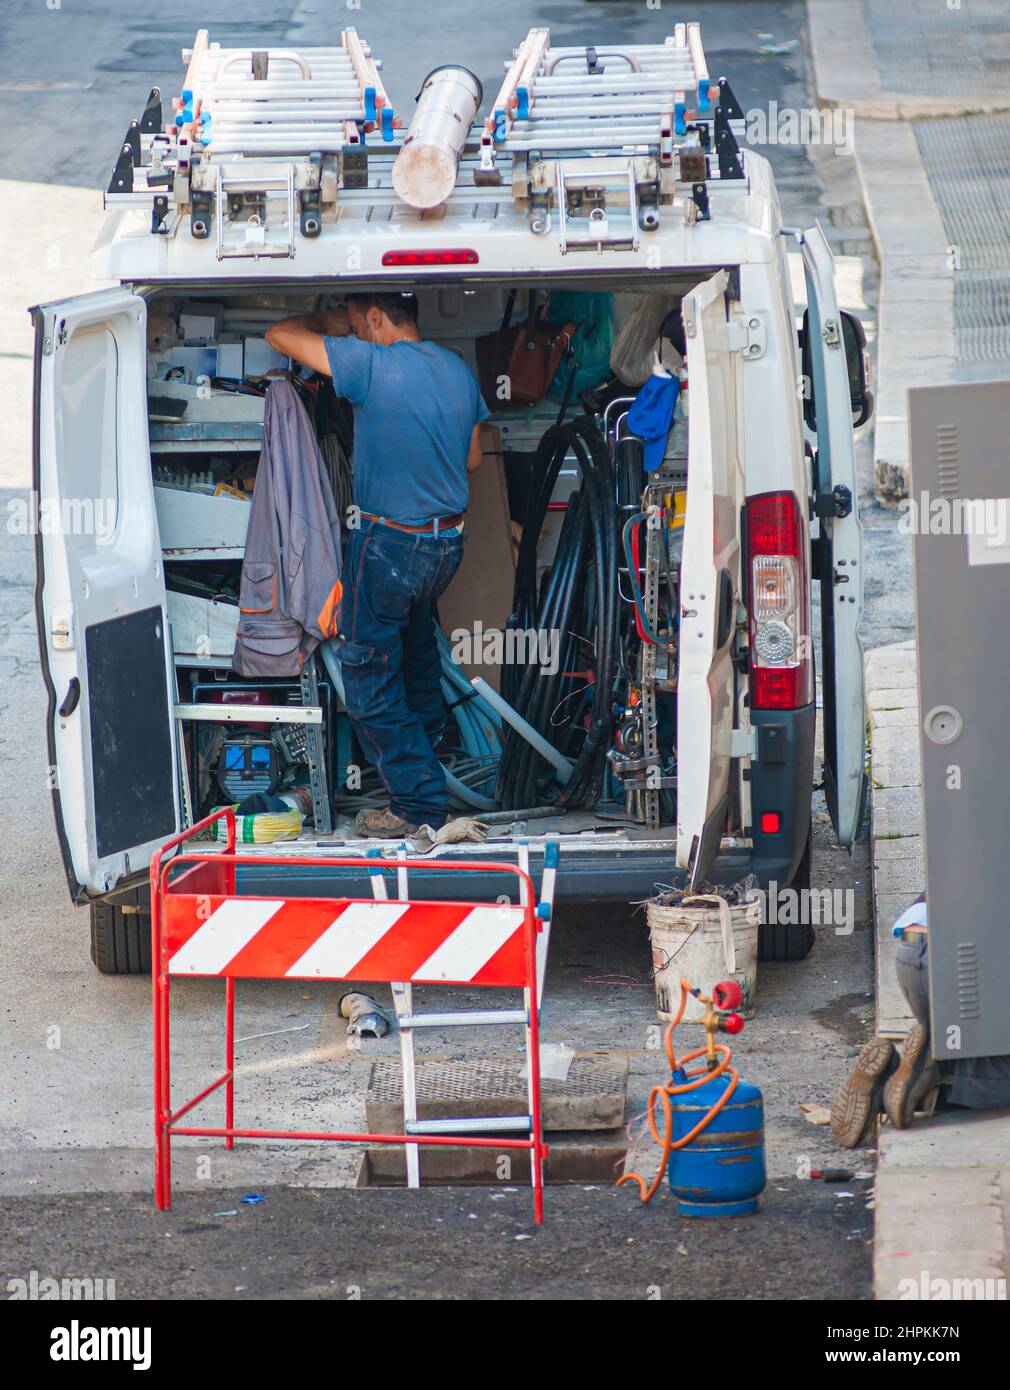 Trabajador dentro de su furgoneta, cargado con herramientas, protegido del tráfico con conos durante la reparación. Foto de stock